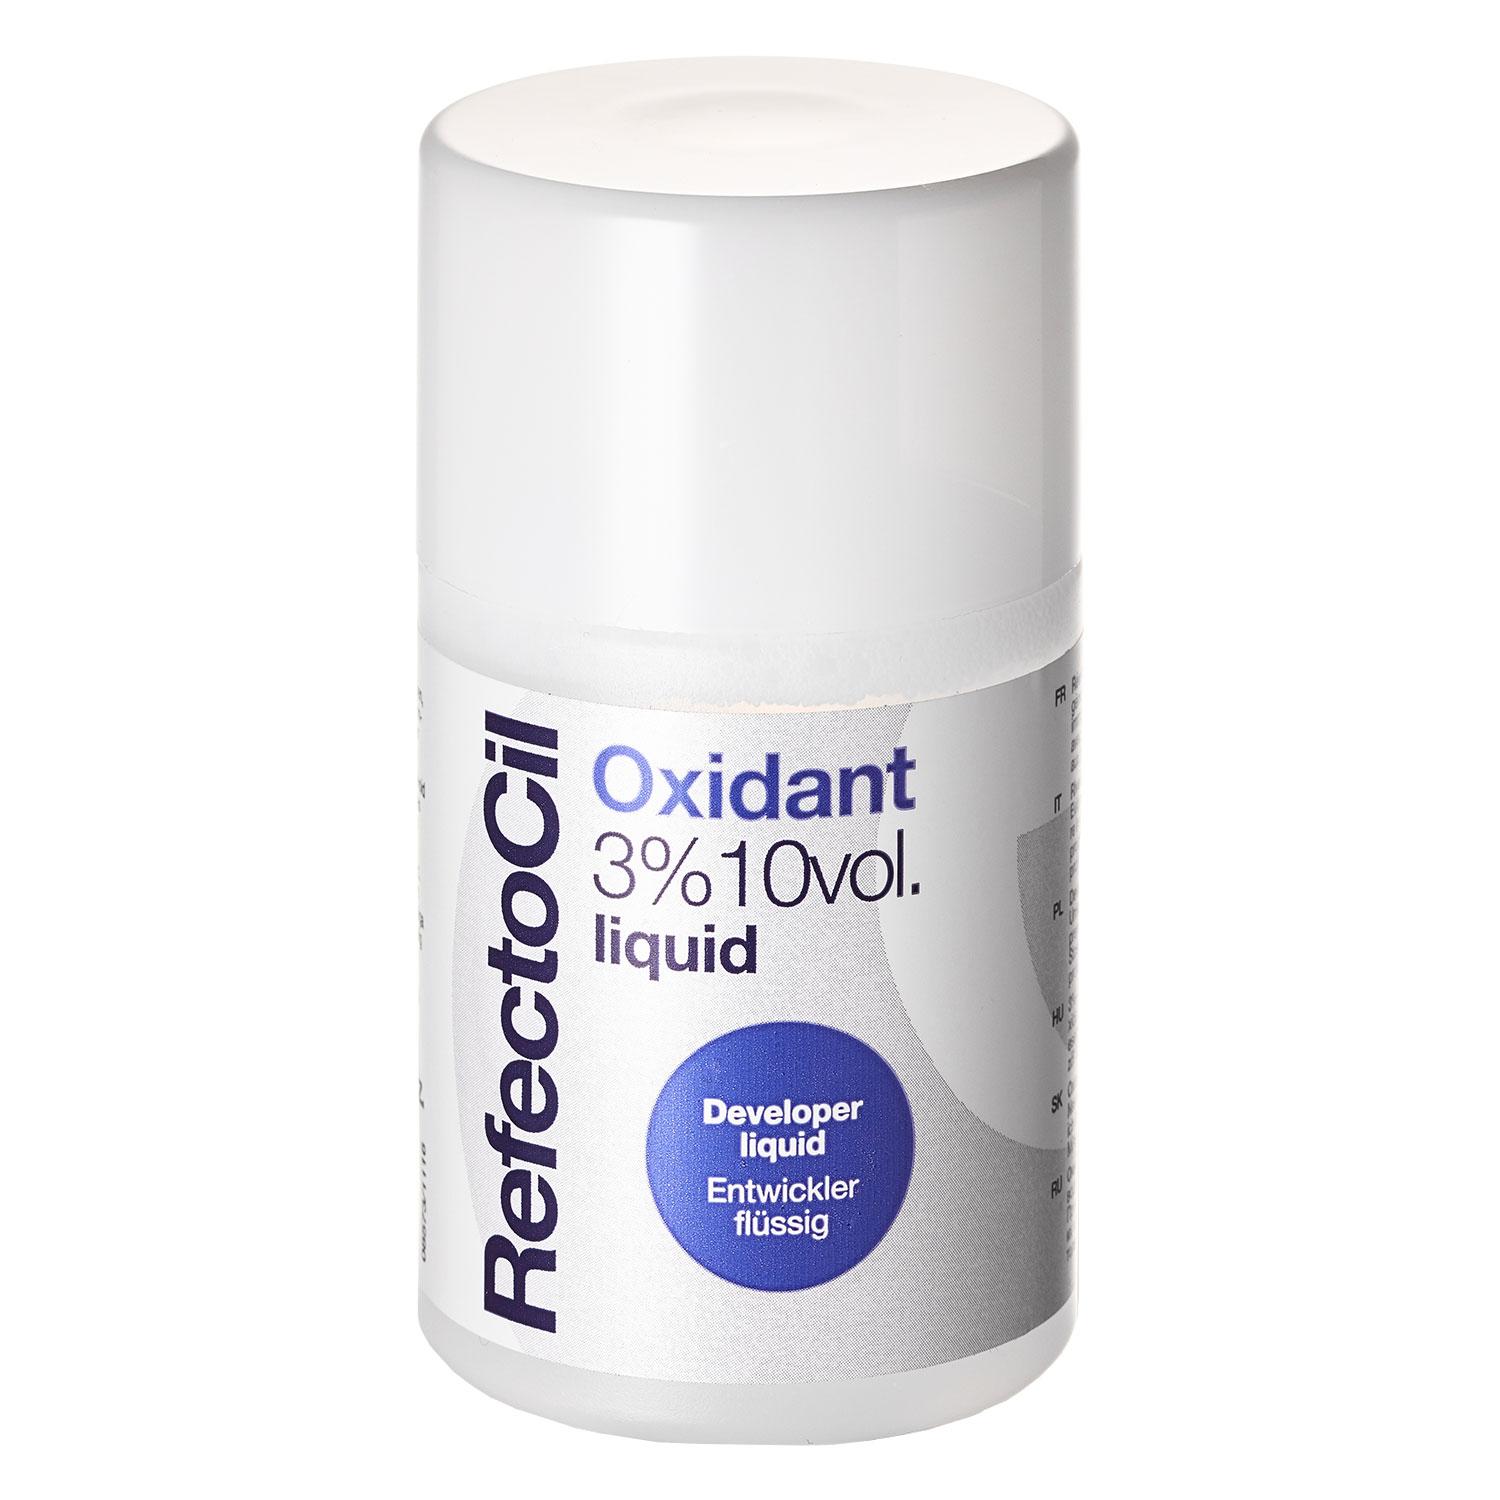 RefectoCil - Oxidant 3% Liquid